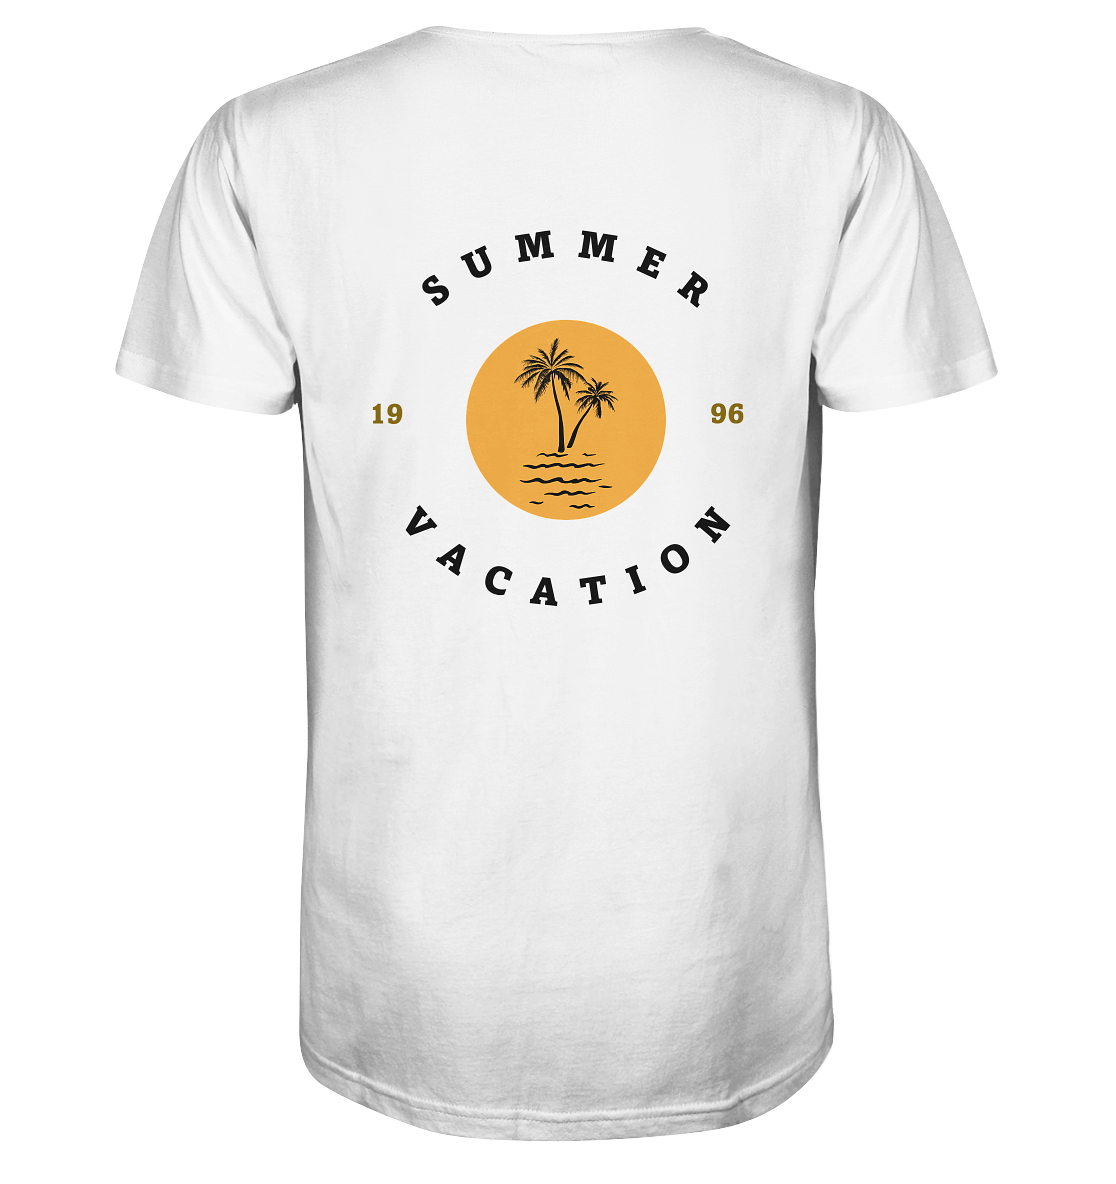 : Bio Baumwolle T-Shirt vegan fair Nachhaltigkeit Reisen Summer Vacation